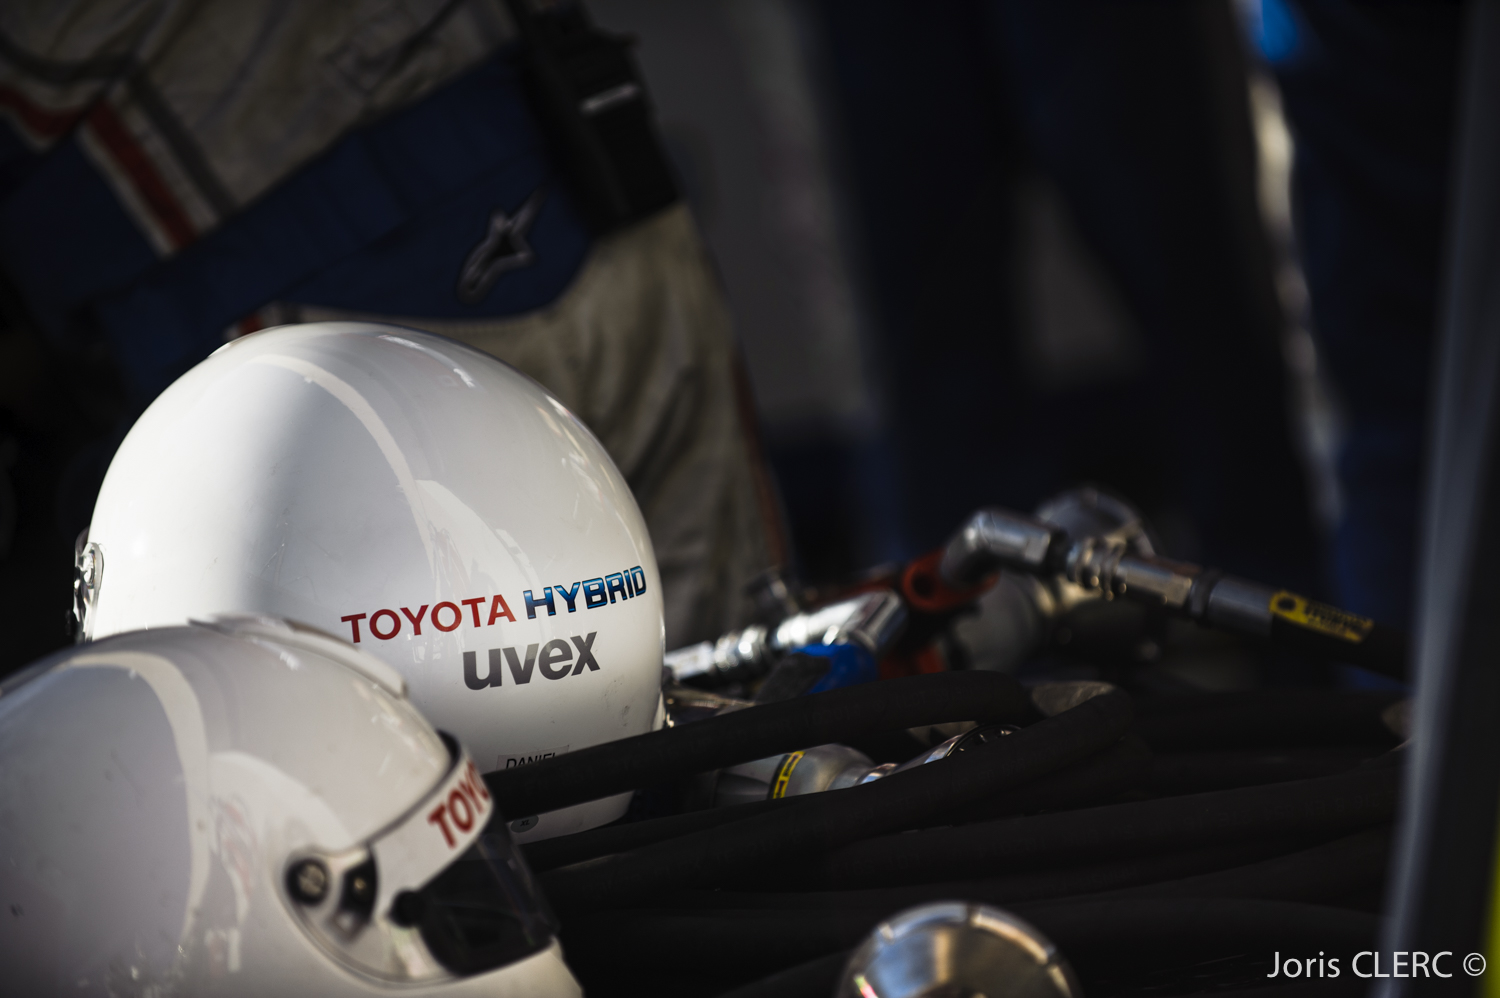 Prologue FIA WEC 2015 - Toyota TS040 LMP1